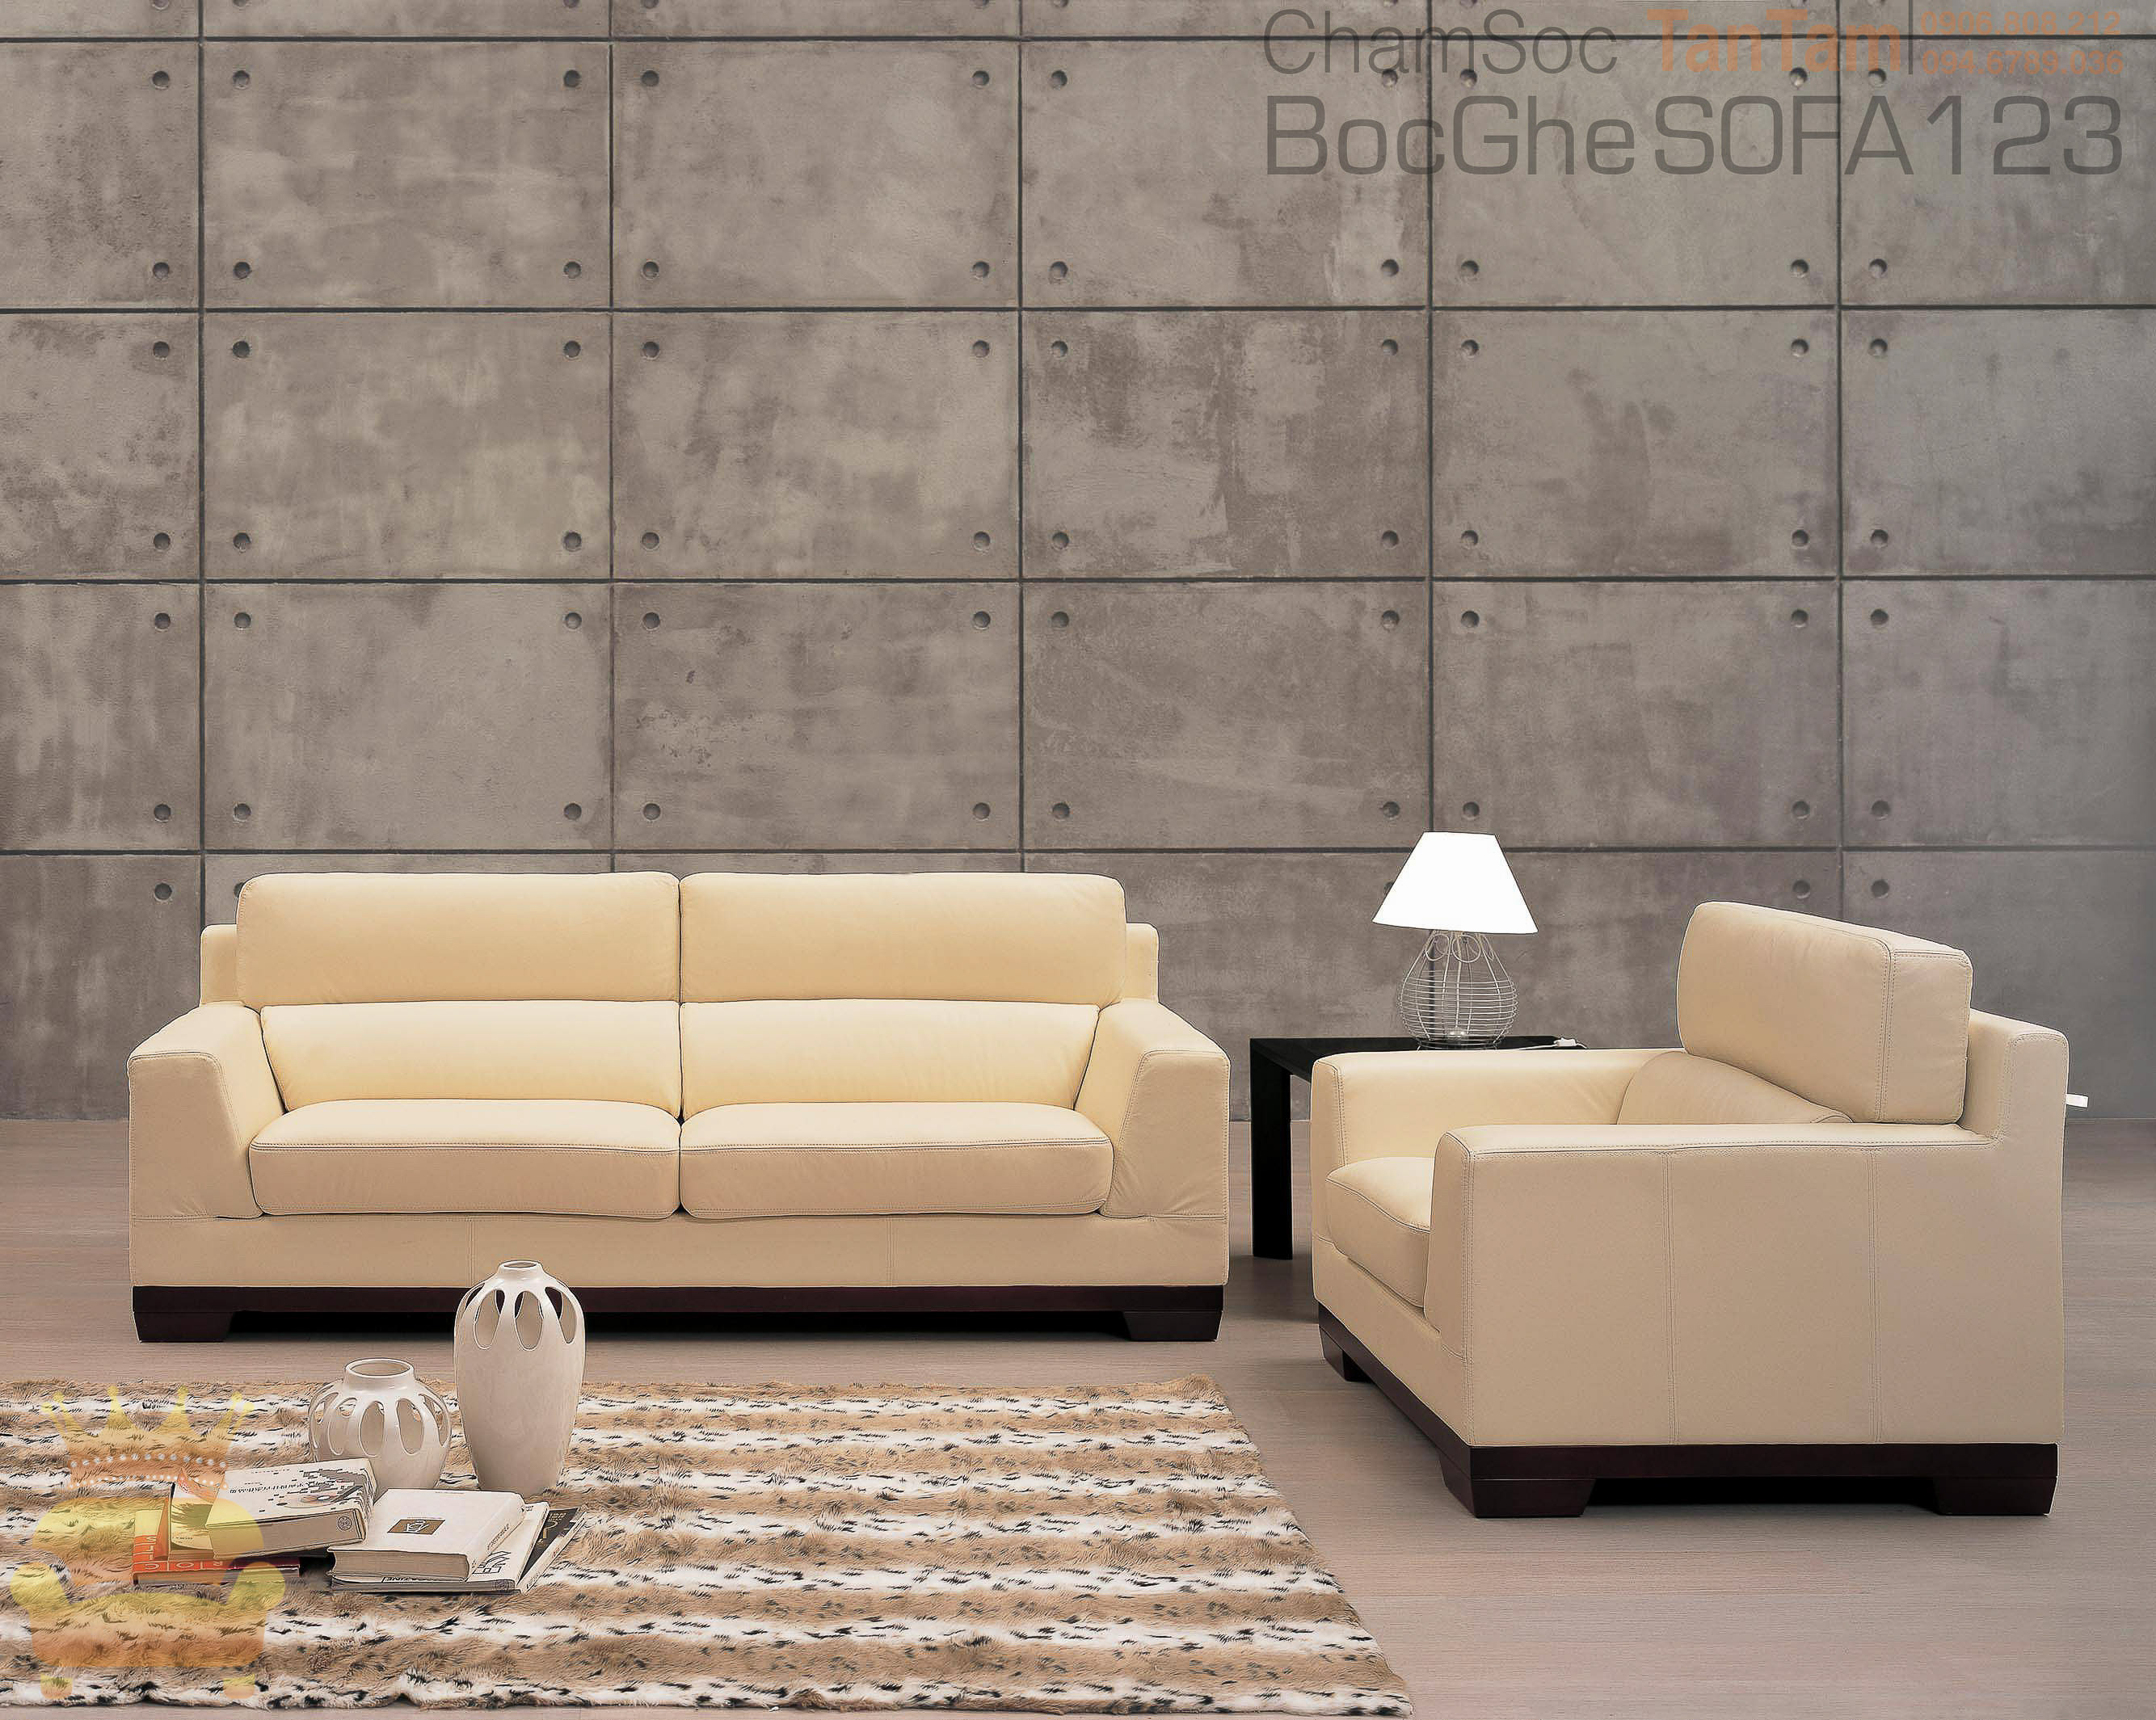 sofa van phong tai boc ghe sofa 123